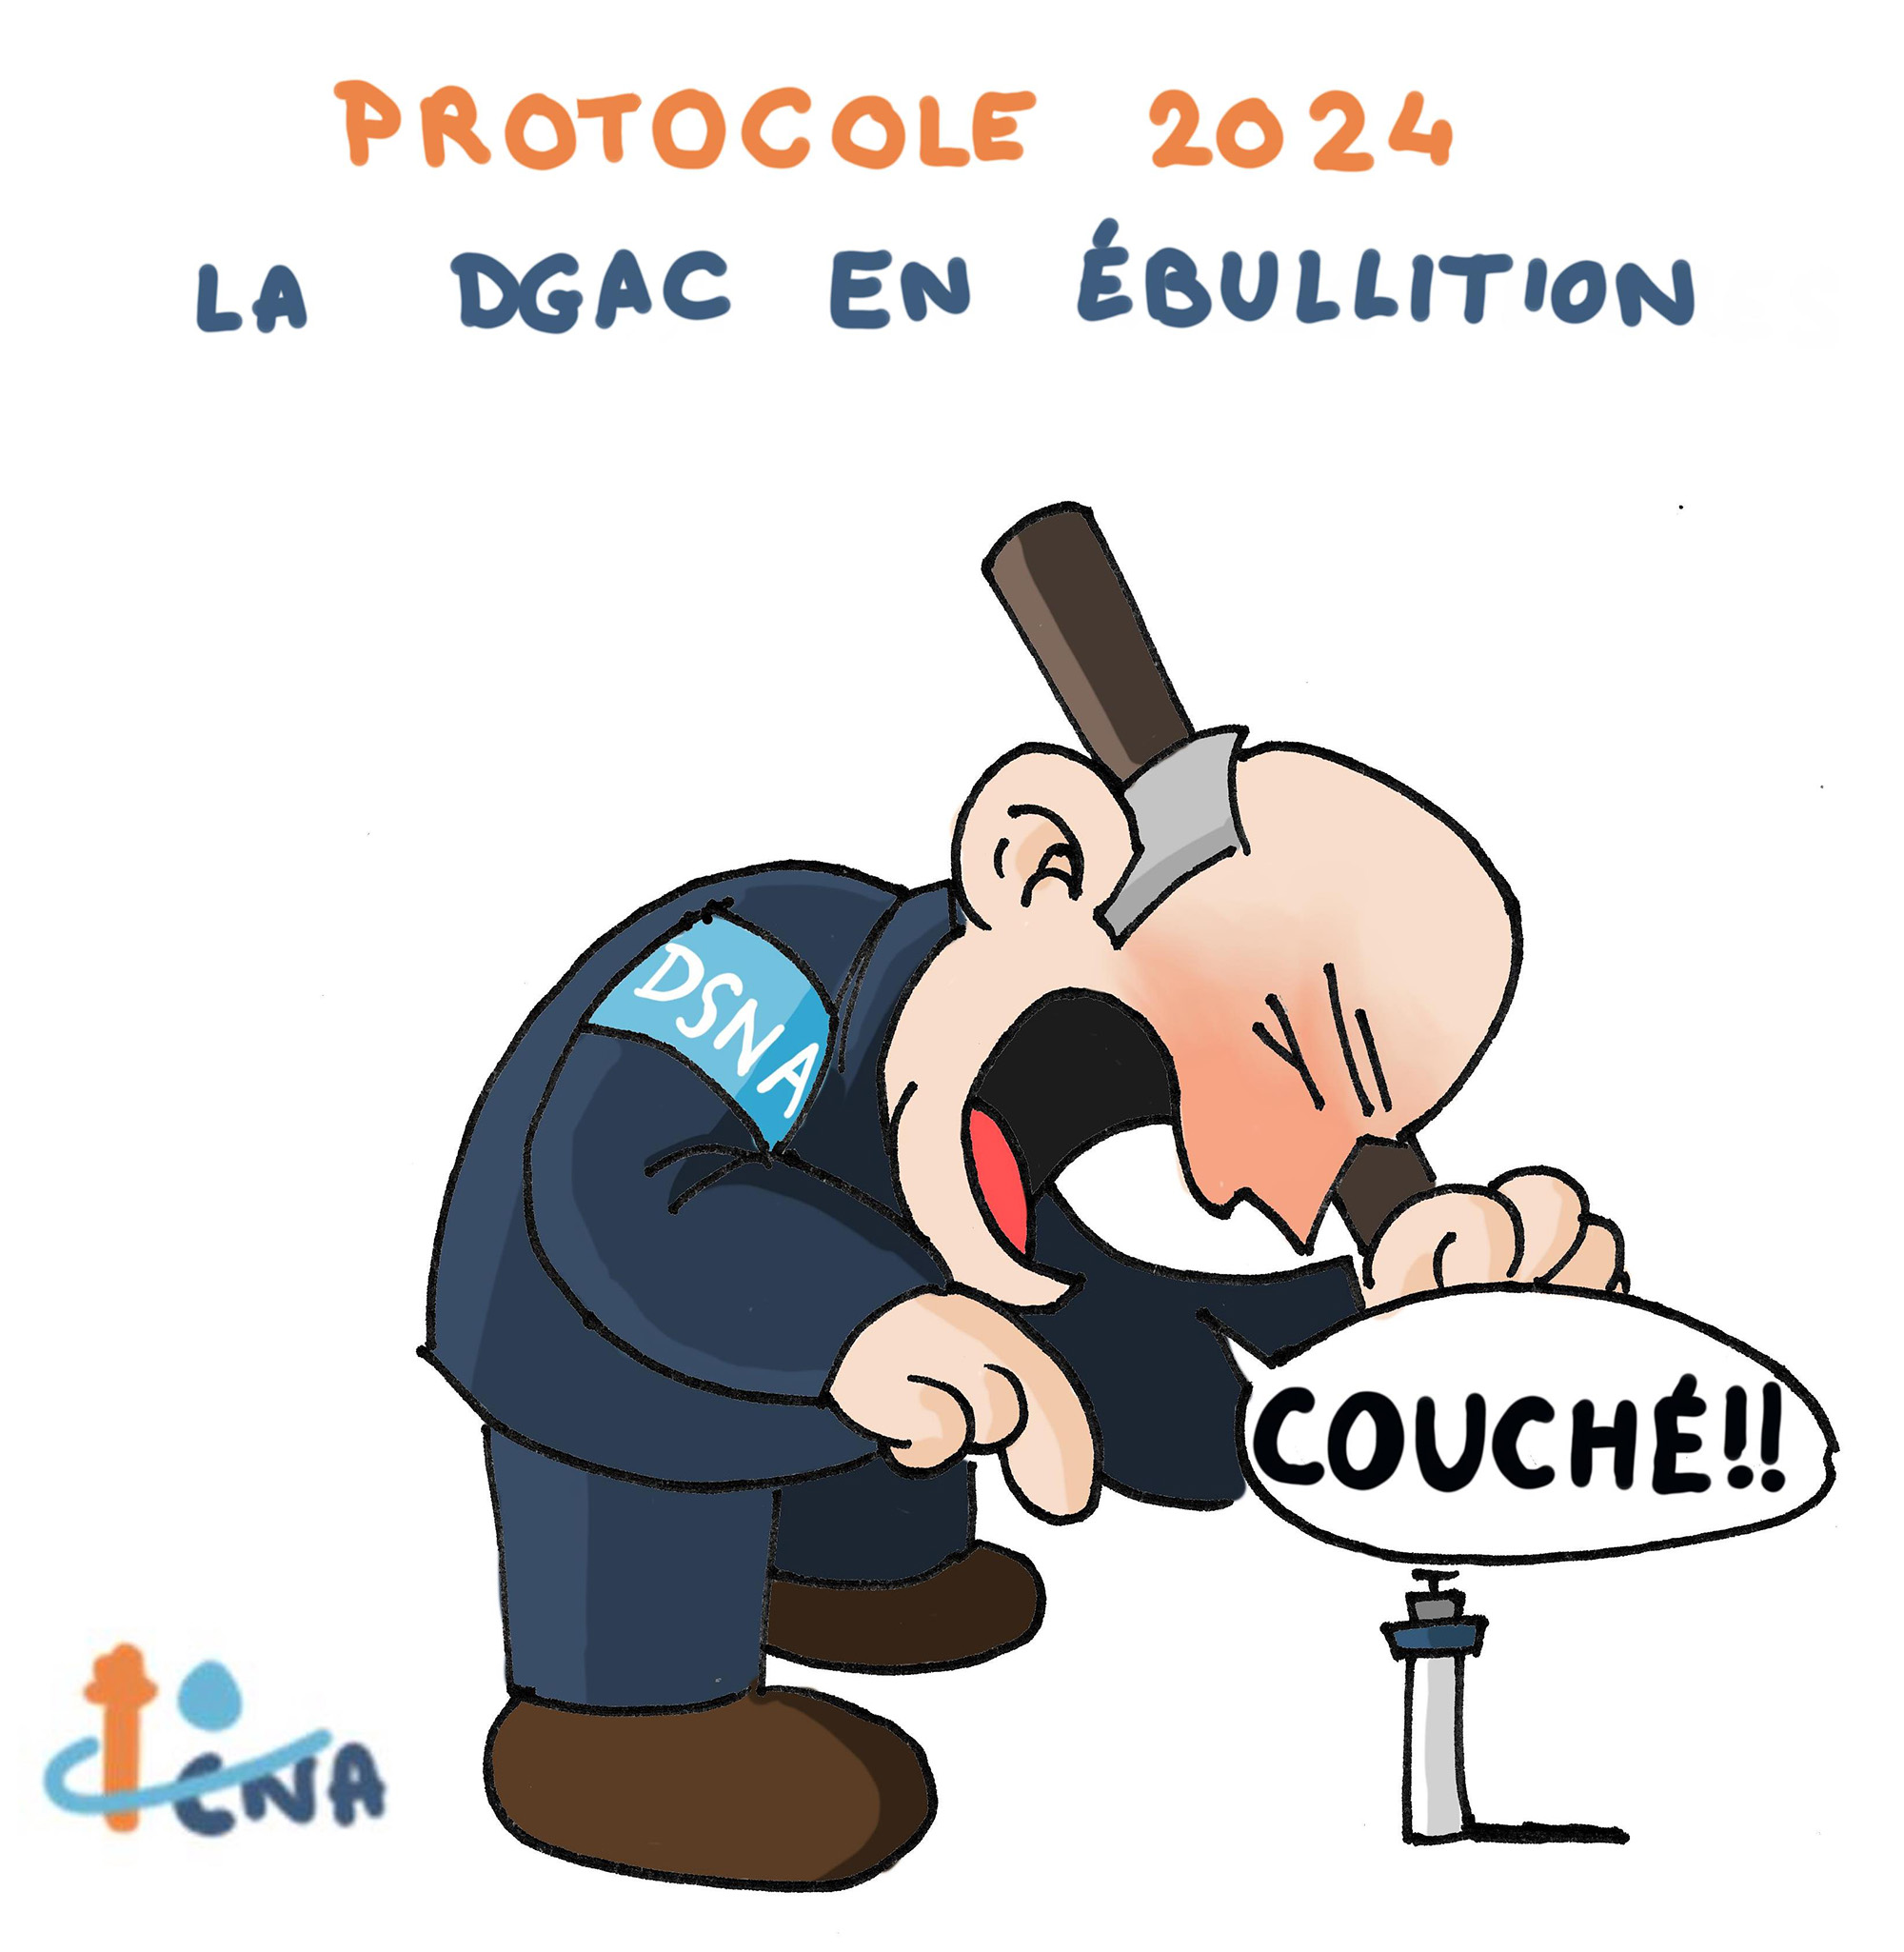 Protocole 2024 : La DGAC en ébullition